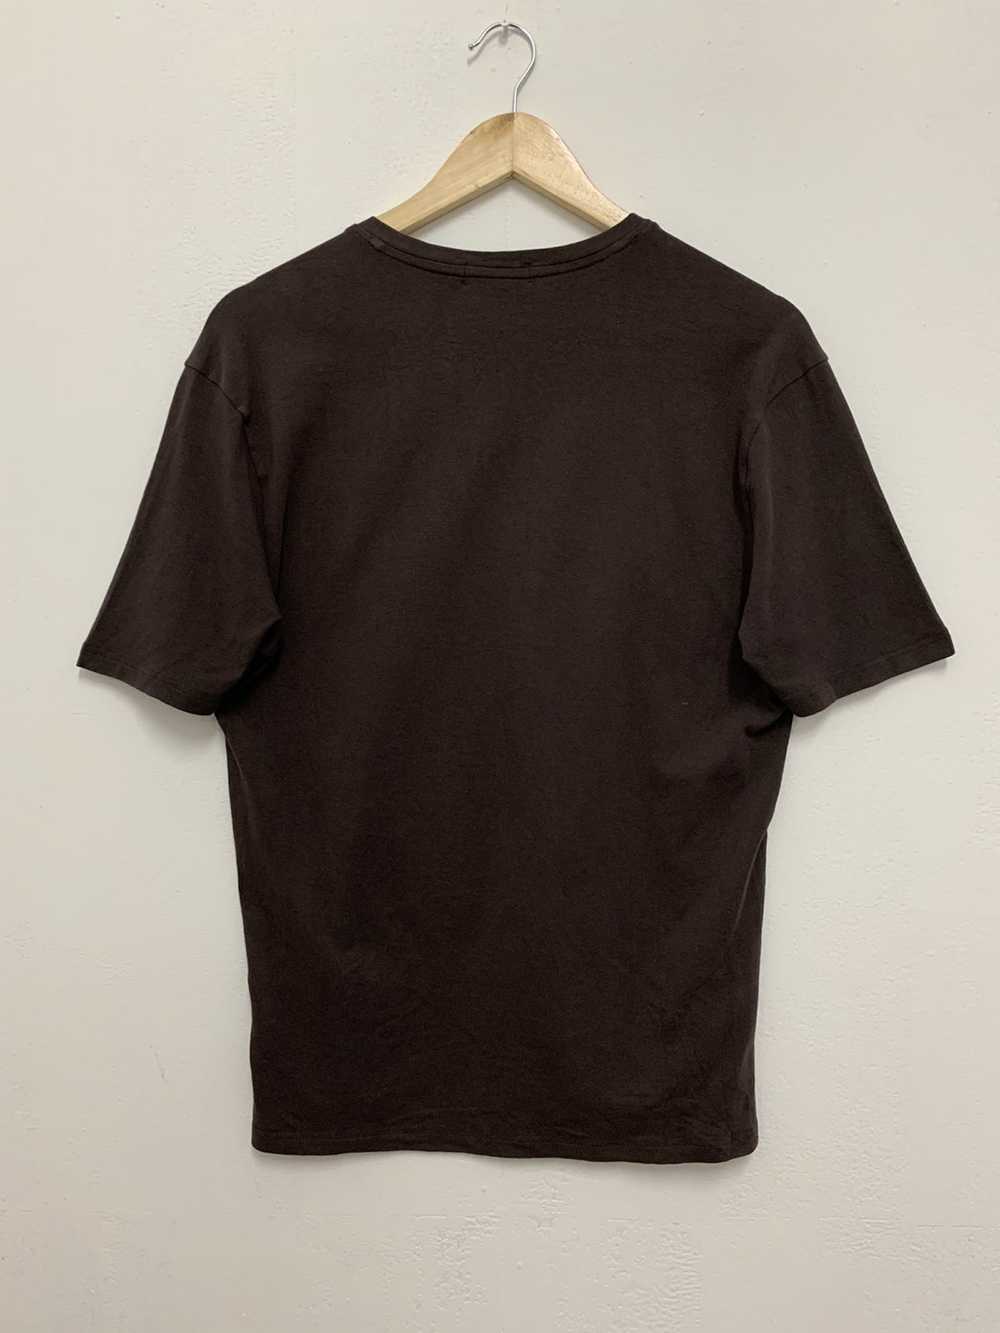 Burberry Burberry Black Label V-neck Shirt Chocol… - image 4